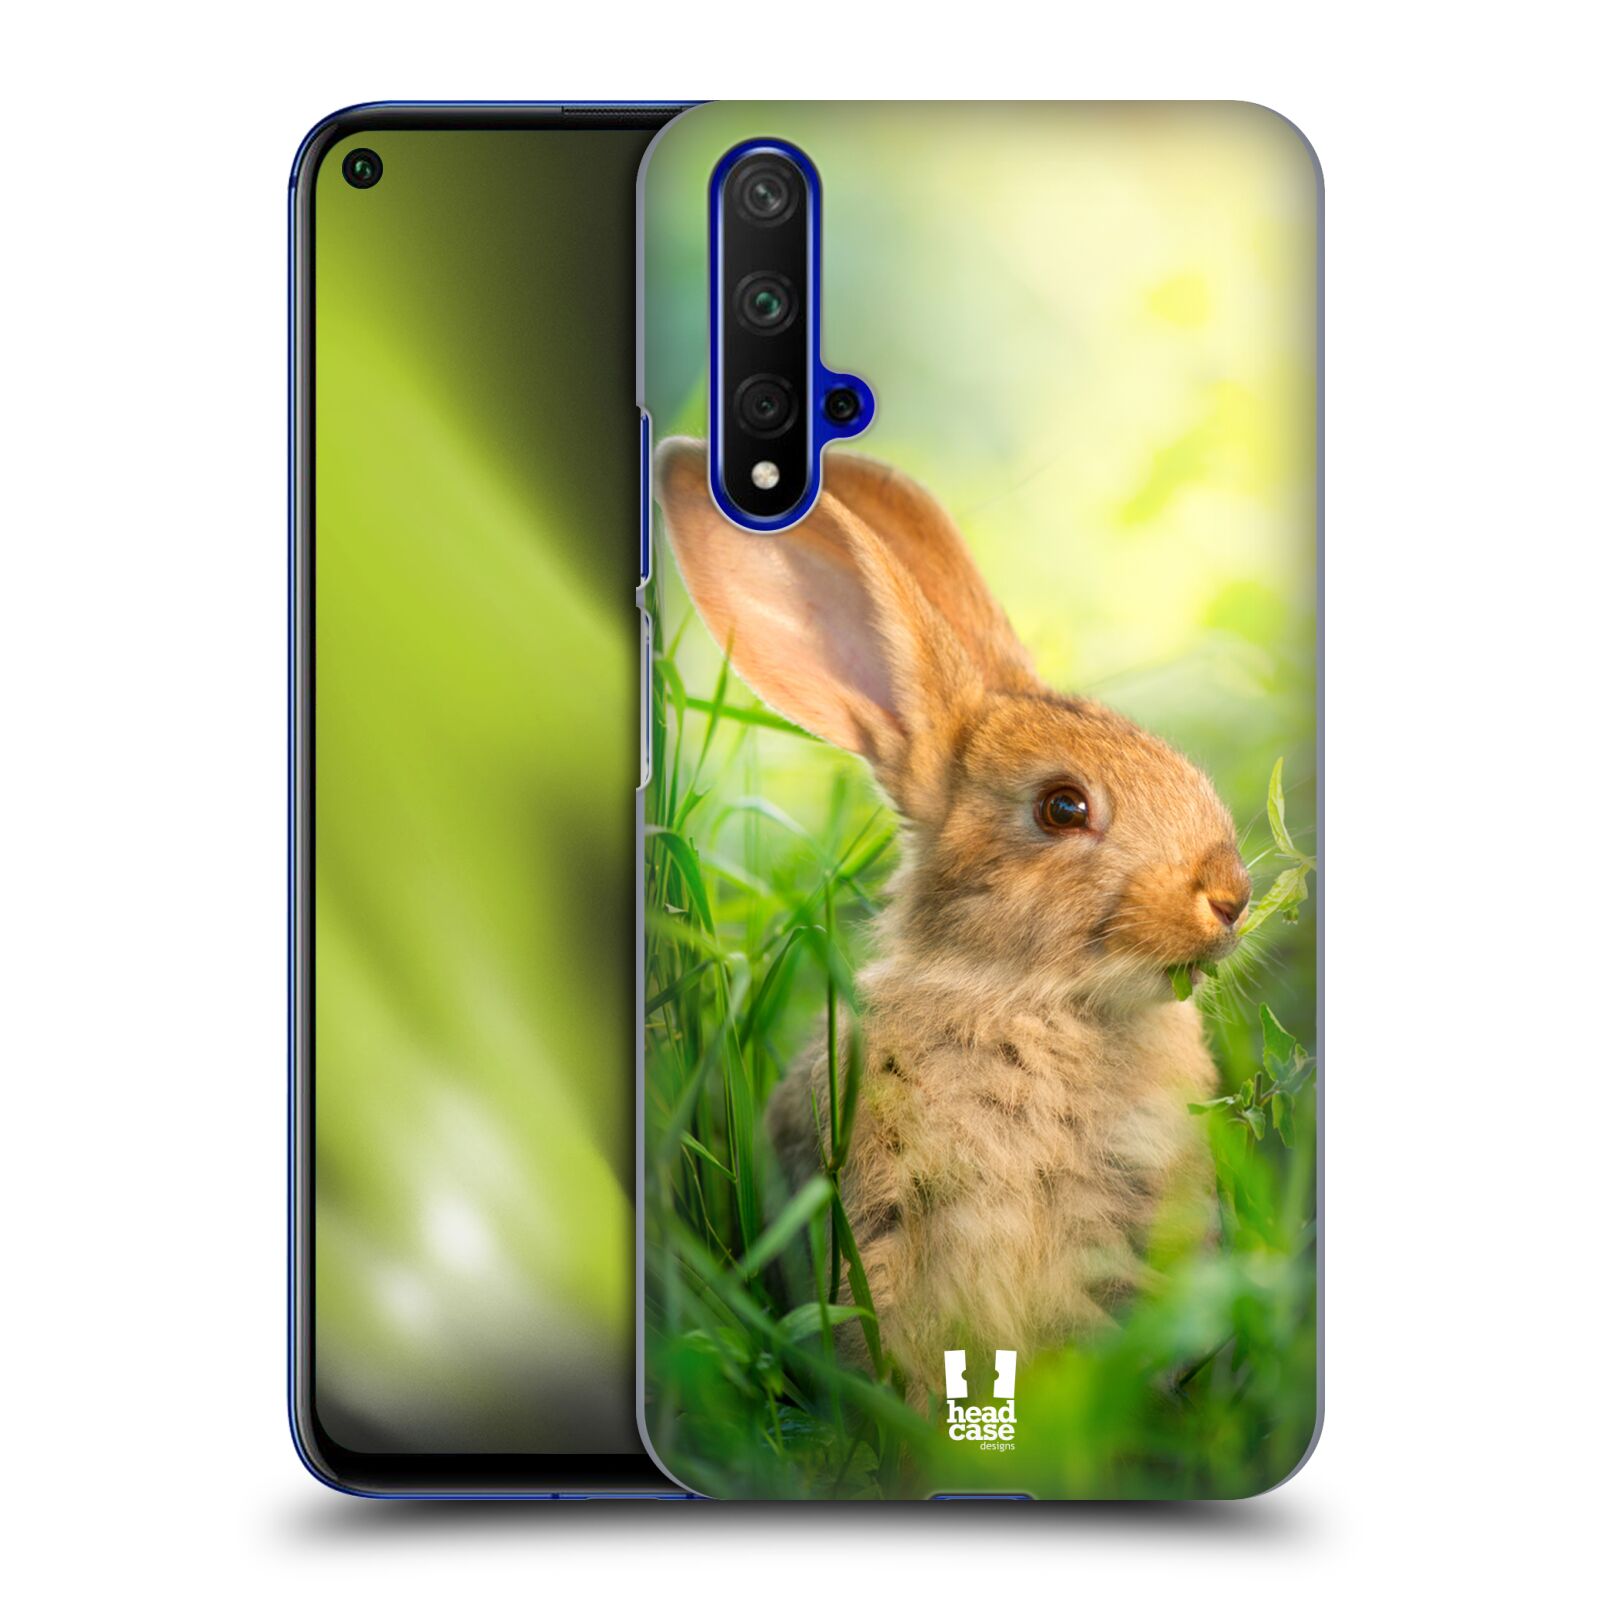 Pouzdro na mobil Honor 20 - HEAD CASE - vzor Divočina, Divoký život a zvířata foto ZAJÍČEK V TRÁVĚ ZELENÁ